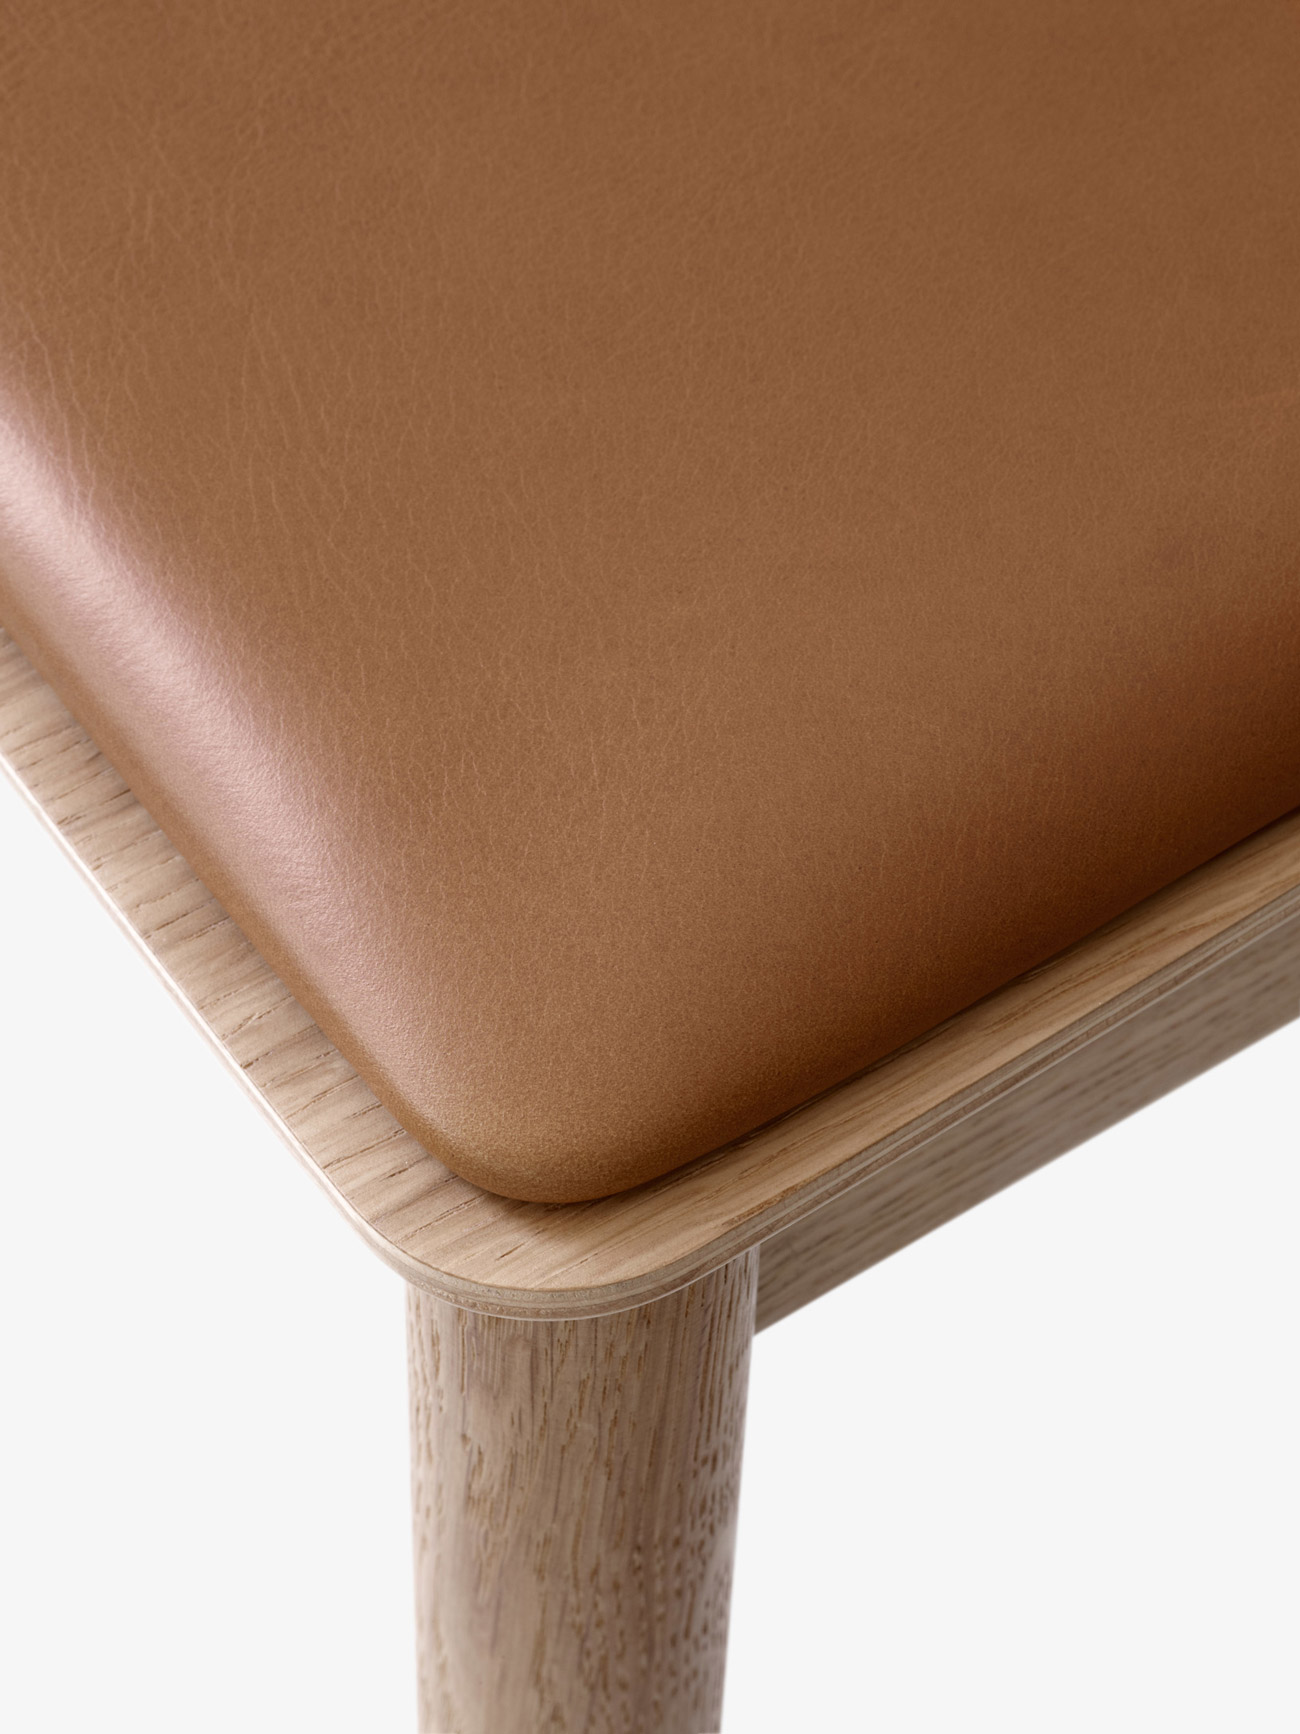 Detail shot of Betty Chair by Thau & Kallio | Aesence